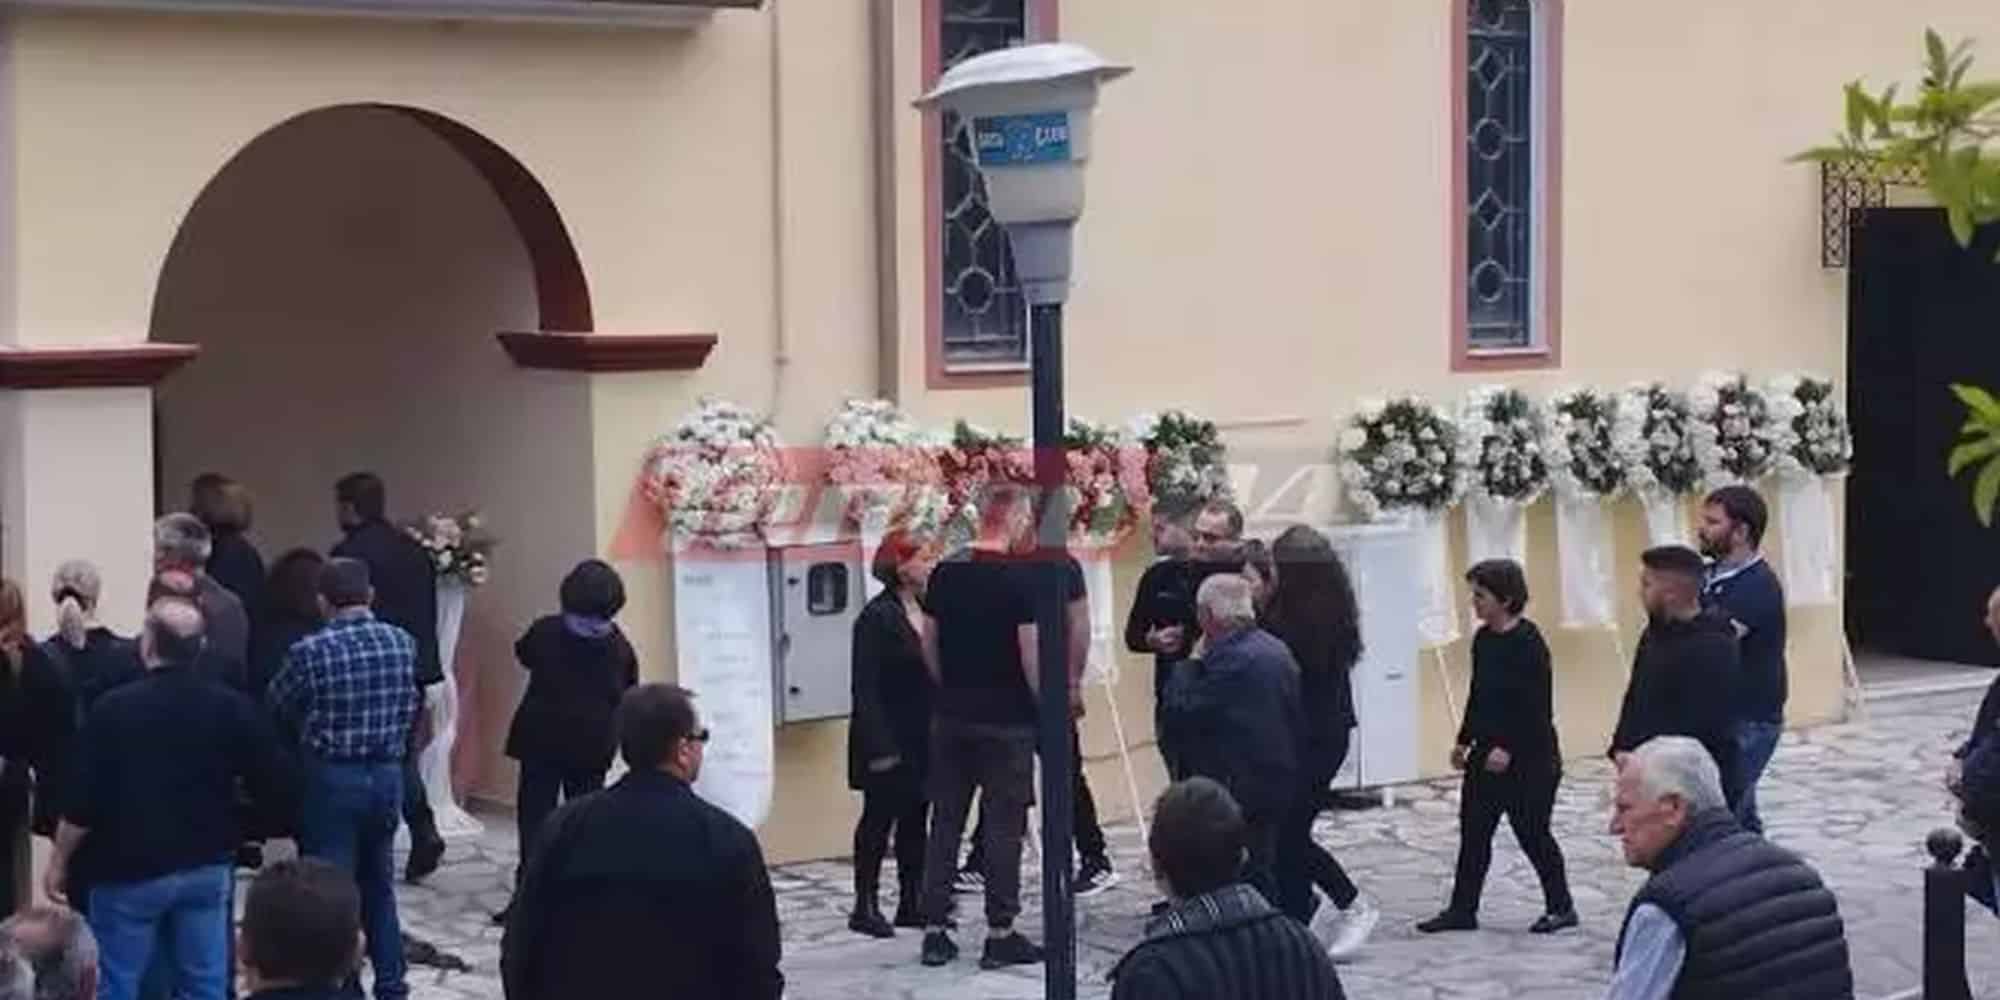 Άρτα: Αγκαλιασμένοι έφτασαν στην κηδεία του βρέφους οι γονείς του - Κατέρρευσε ο πατέρας του (εικόνα)